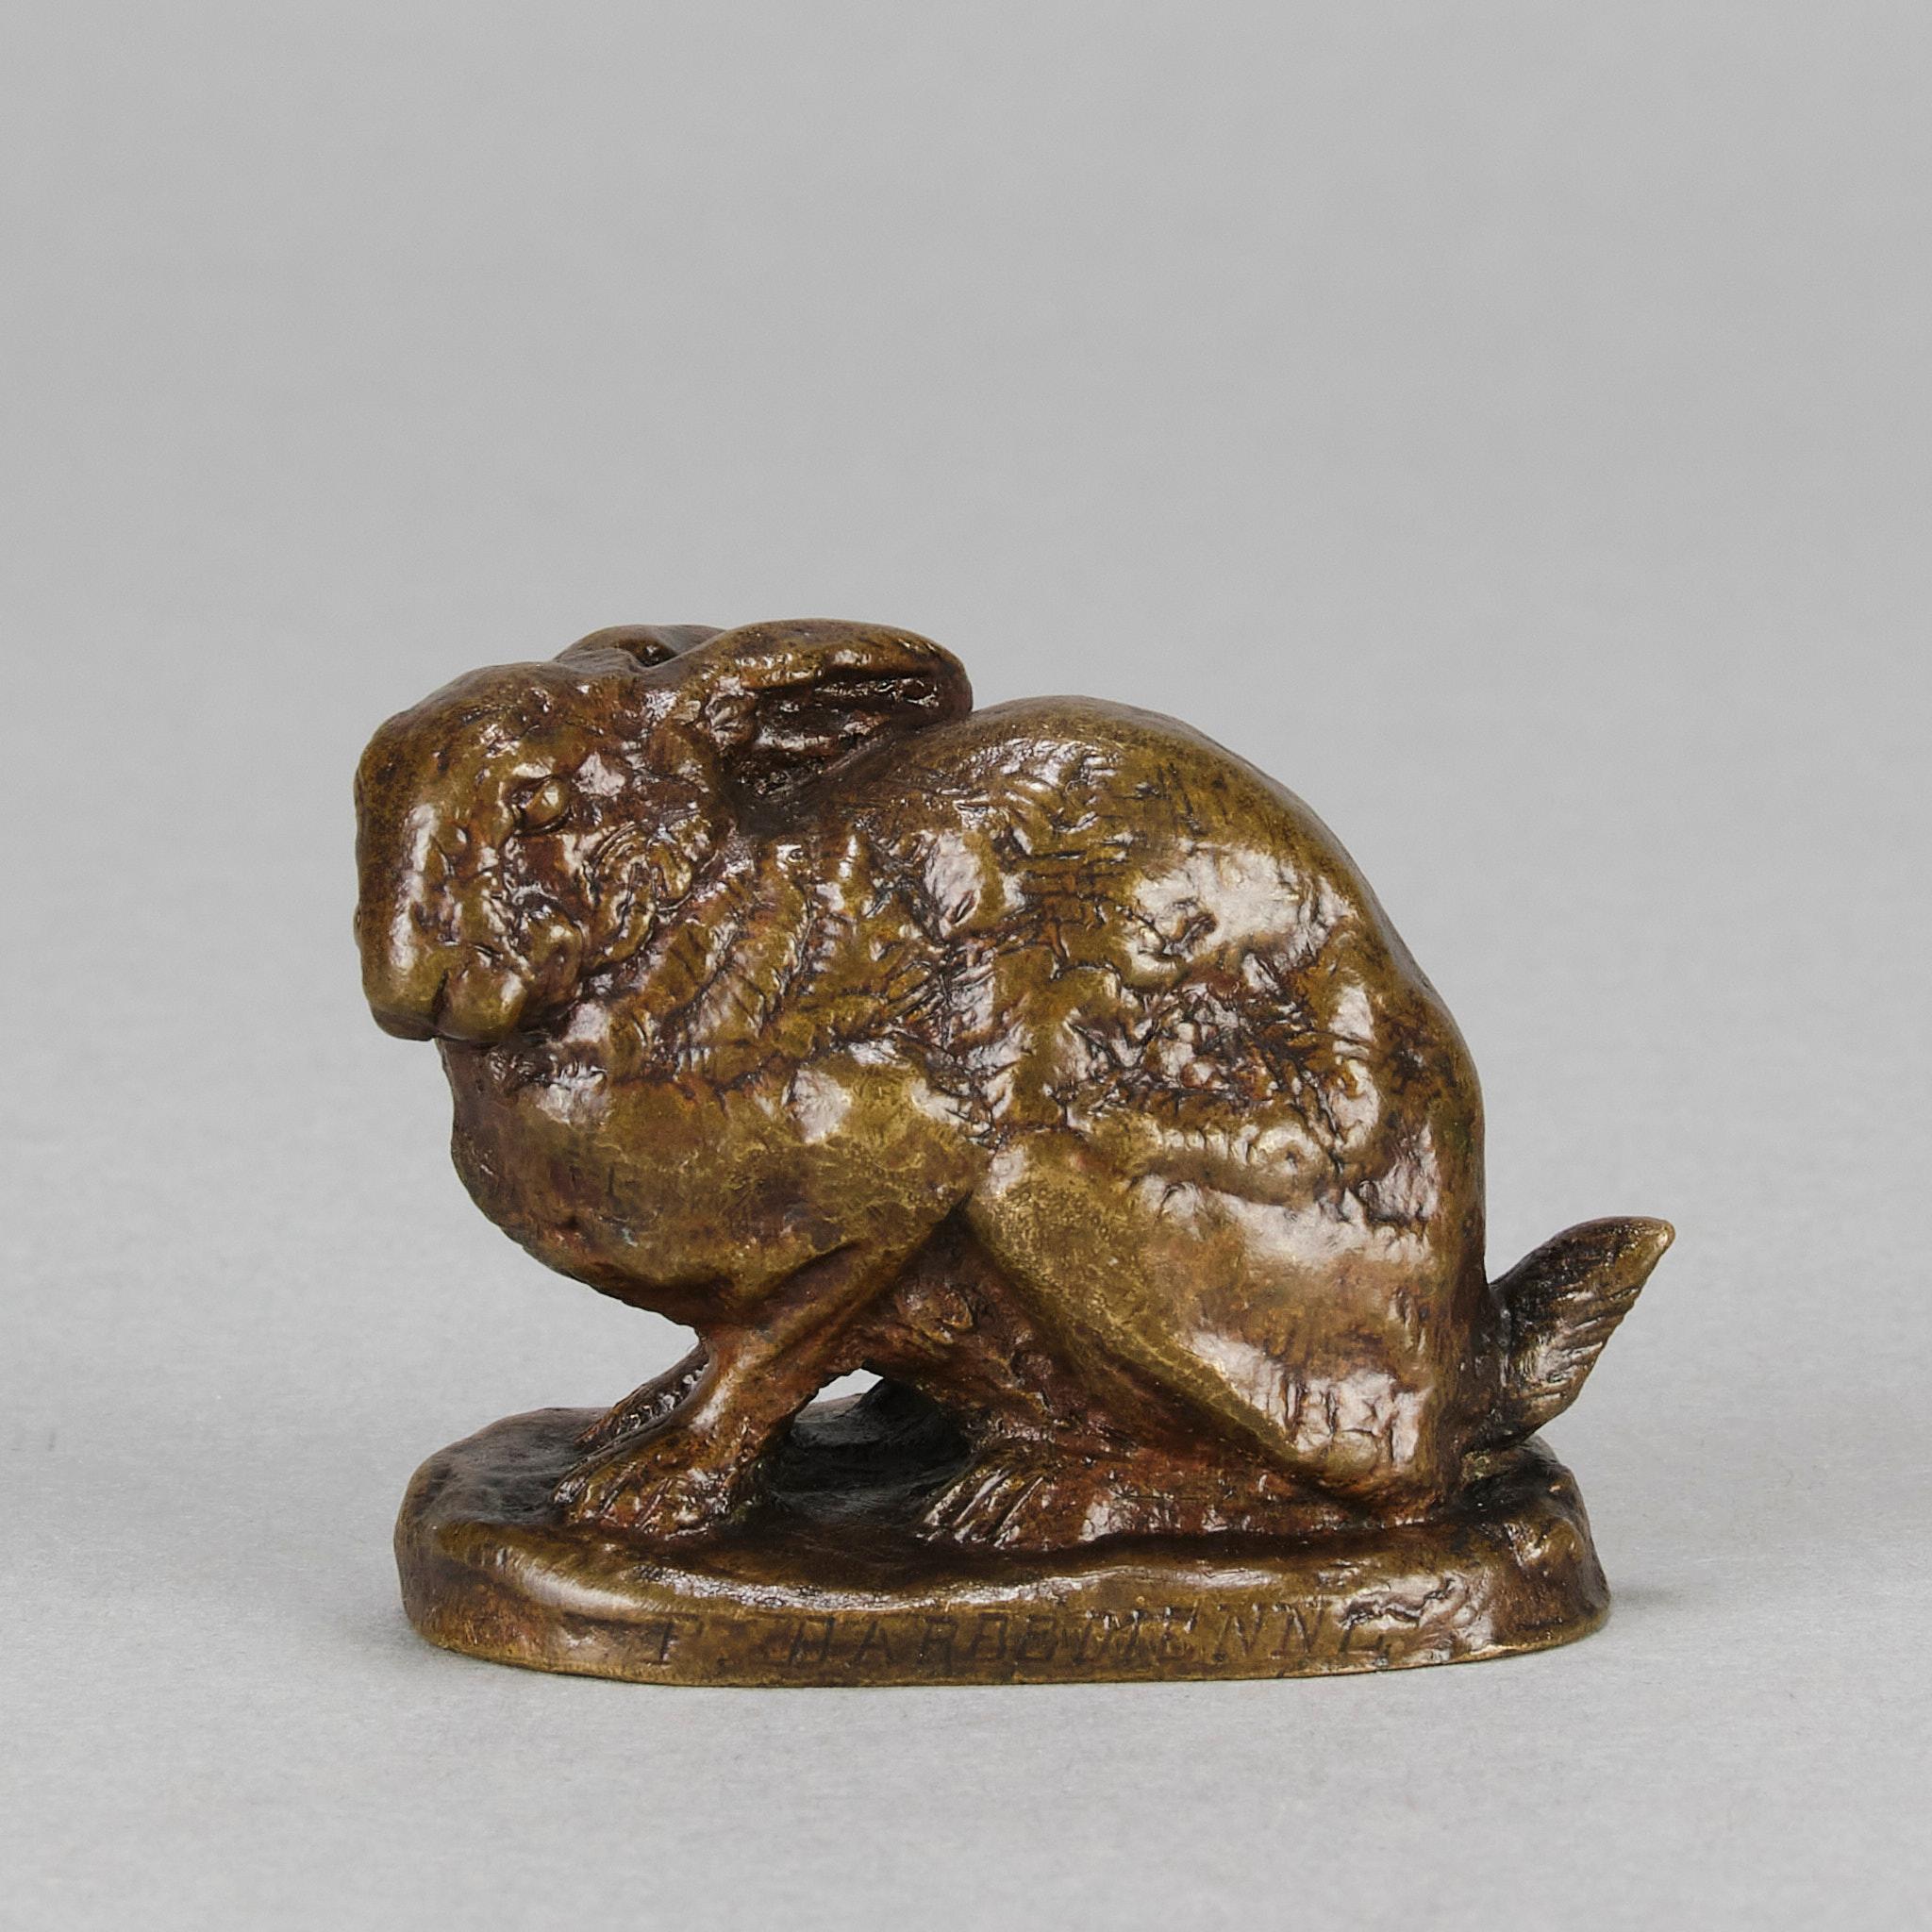 Merveilleuse étude en bronze animalier français du milieu du 19e siècle représentant un lapin assis dans une position timide. La surface présente une riche patine verte et brune panachée et d'excellents détails ciselés à la main. Signé Barye et